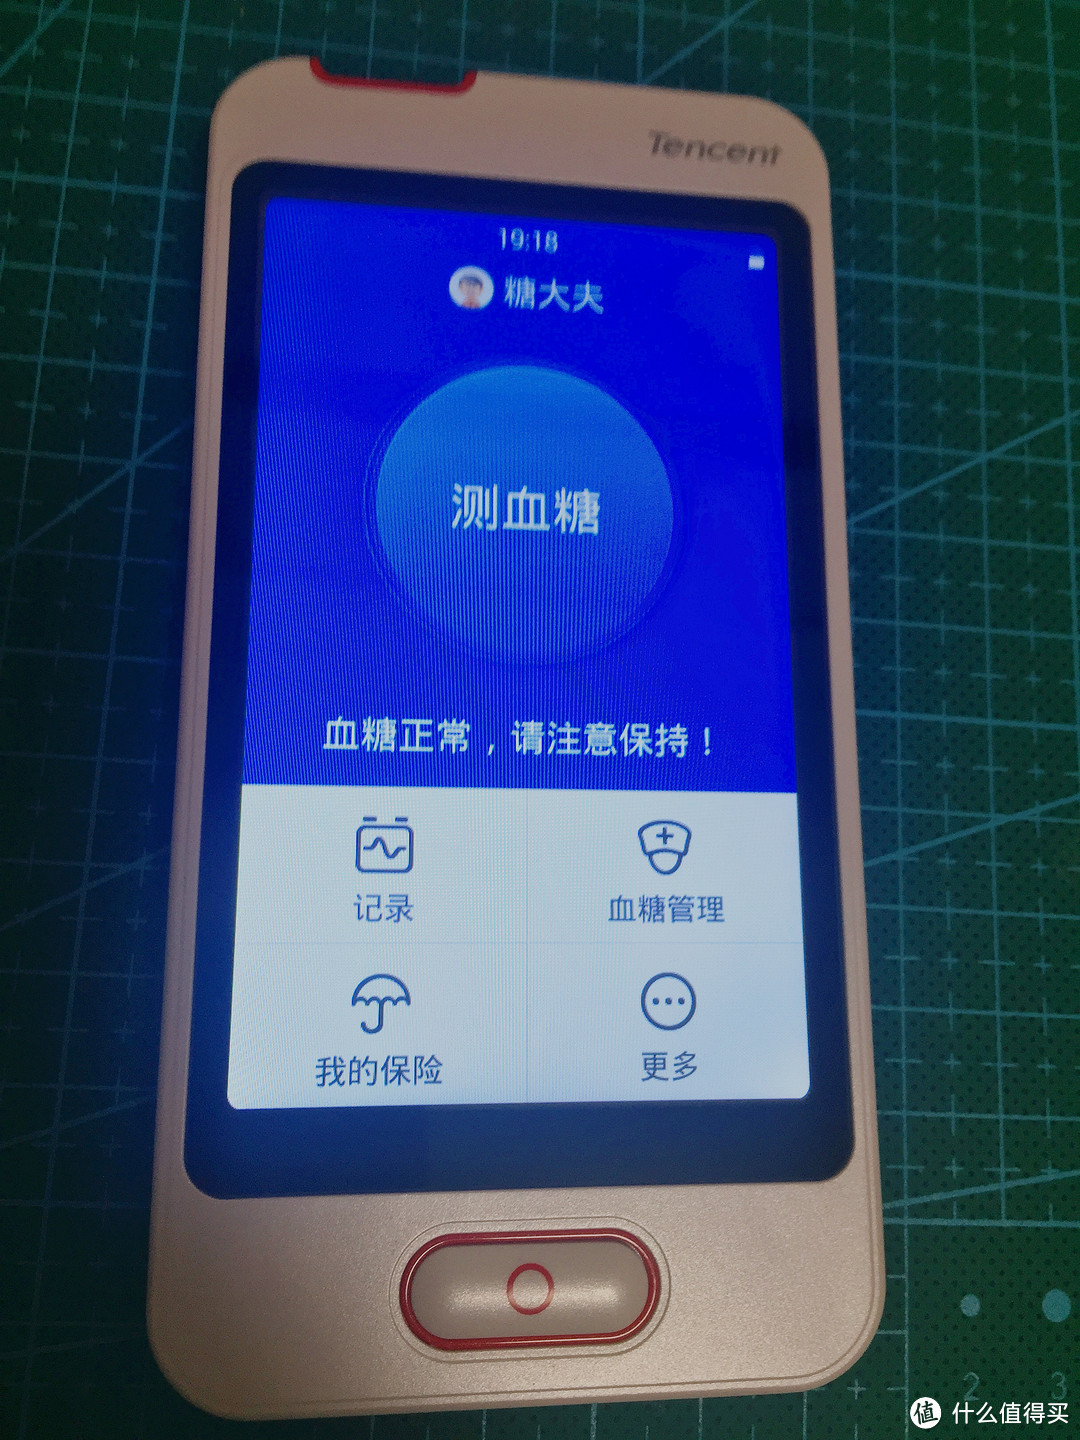 糖大夫众测评测ing！Tencent 腾讯 腾爱·糖大夫 G-31 微信智能血糖仪